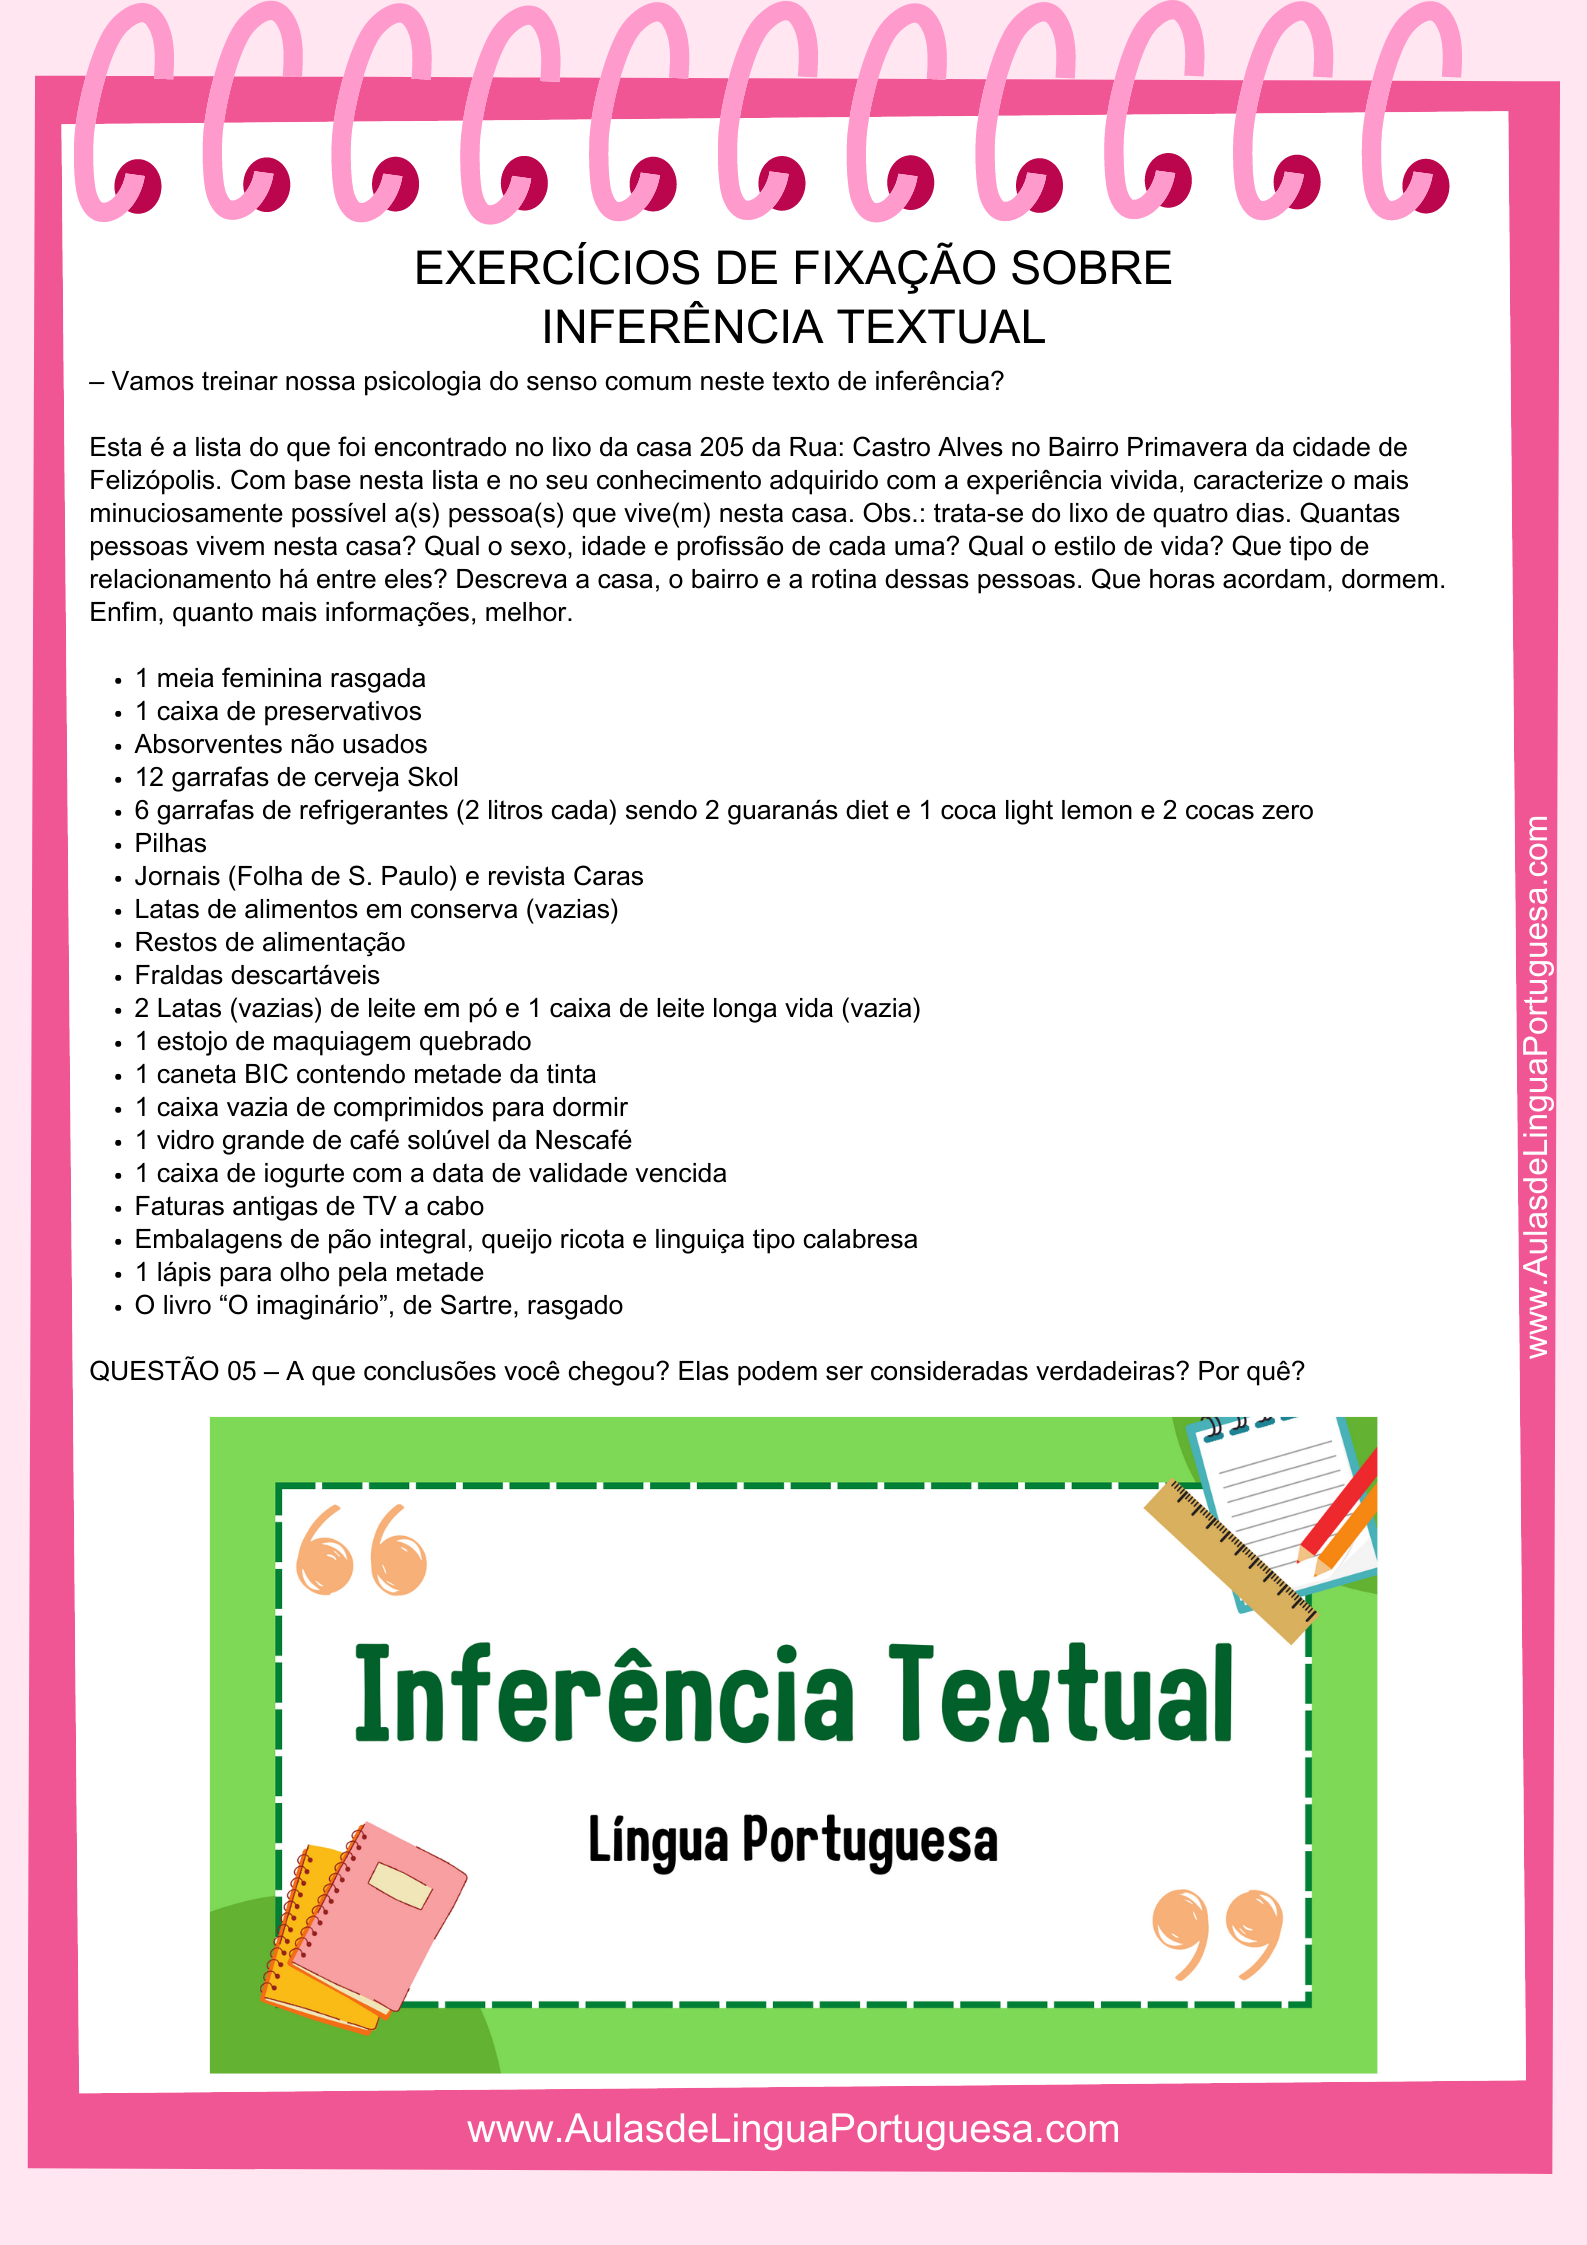 Vamos entender o que é Inferência Textual (D3 – Inferir o sentido de uma palavra ou expressão) e exercitar o que aprendemos com atividades sobre o assunto da Língua Portuguesa.